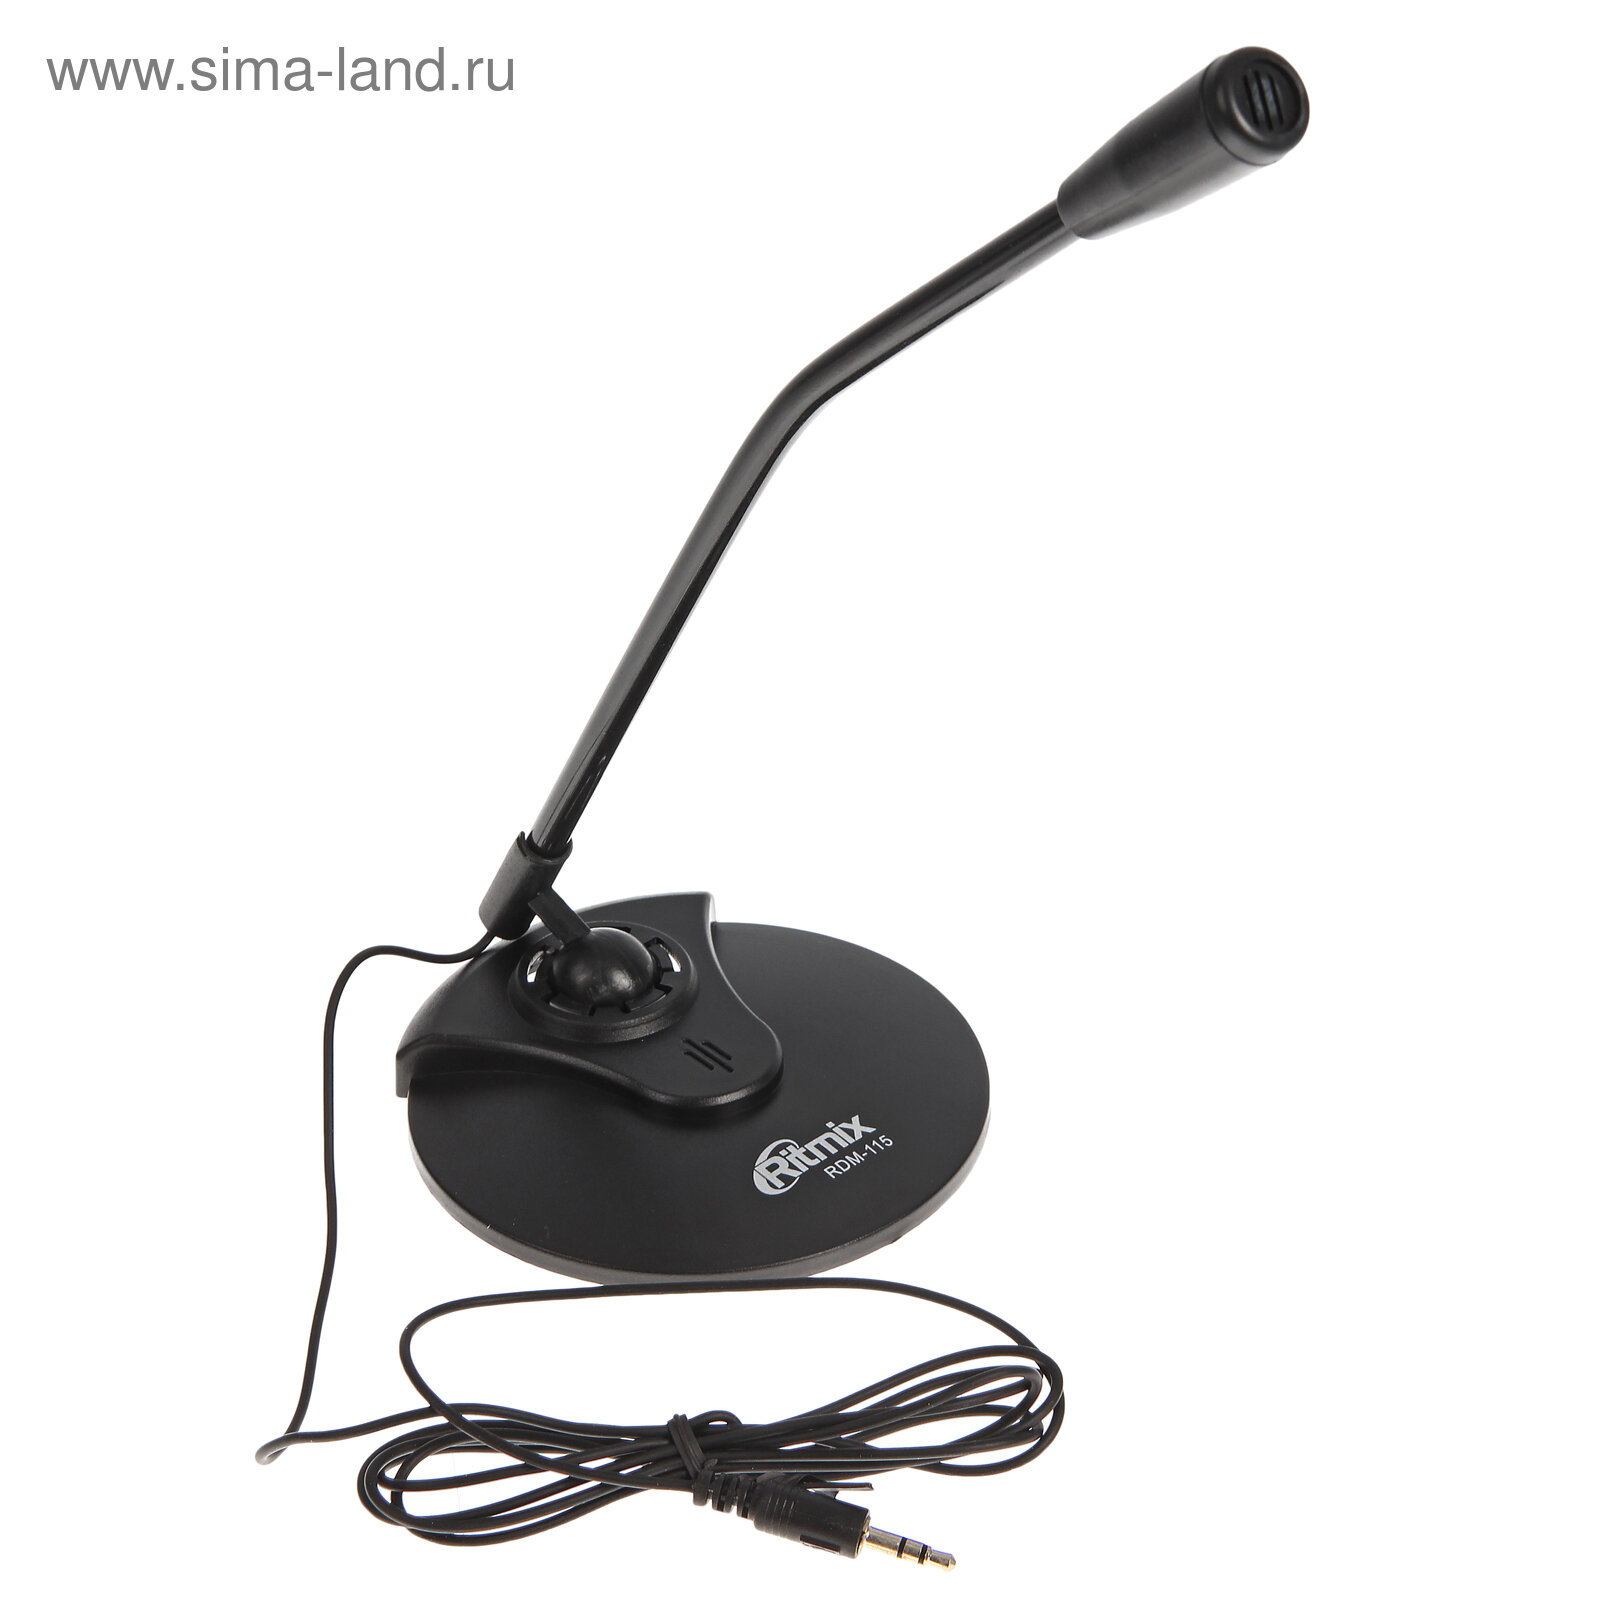 Микрофон RDM-115, на подставке, разъем 3.5 мм, кабель 1.5 м